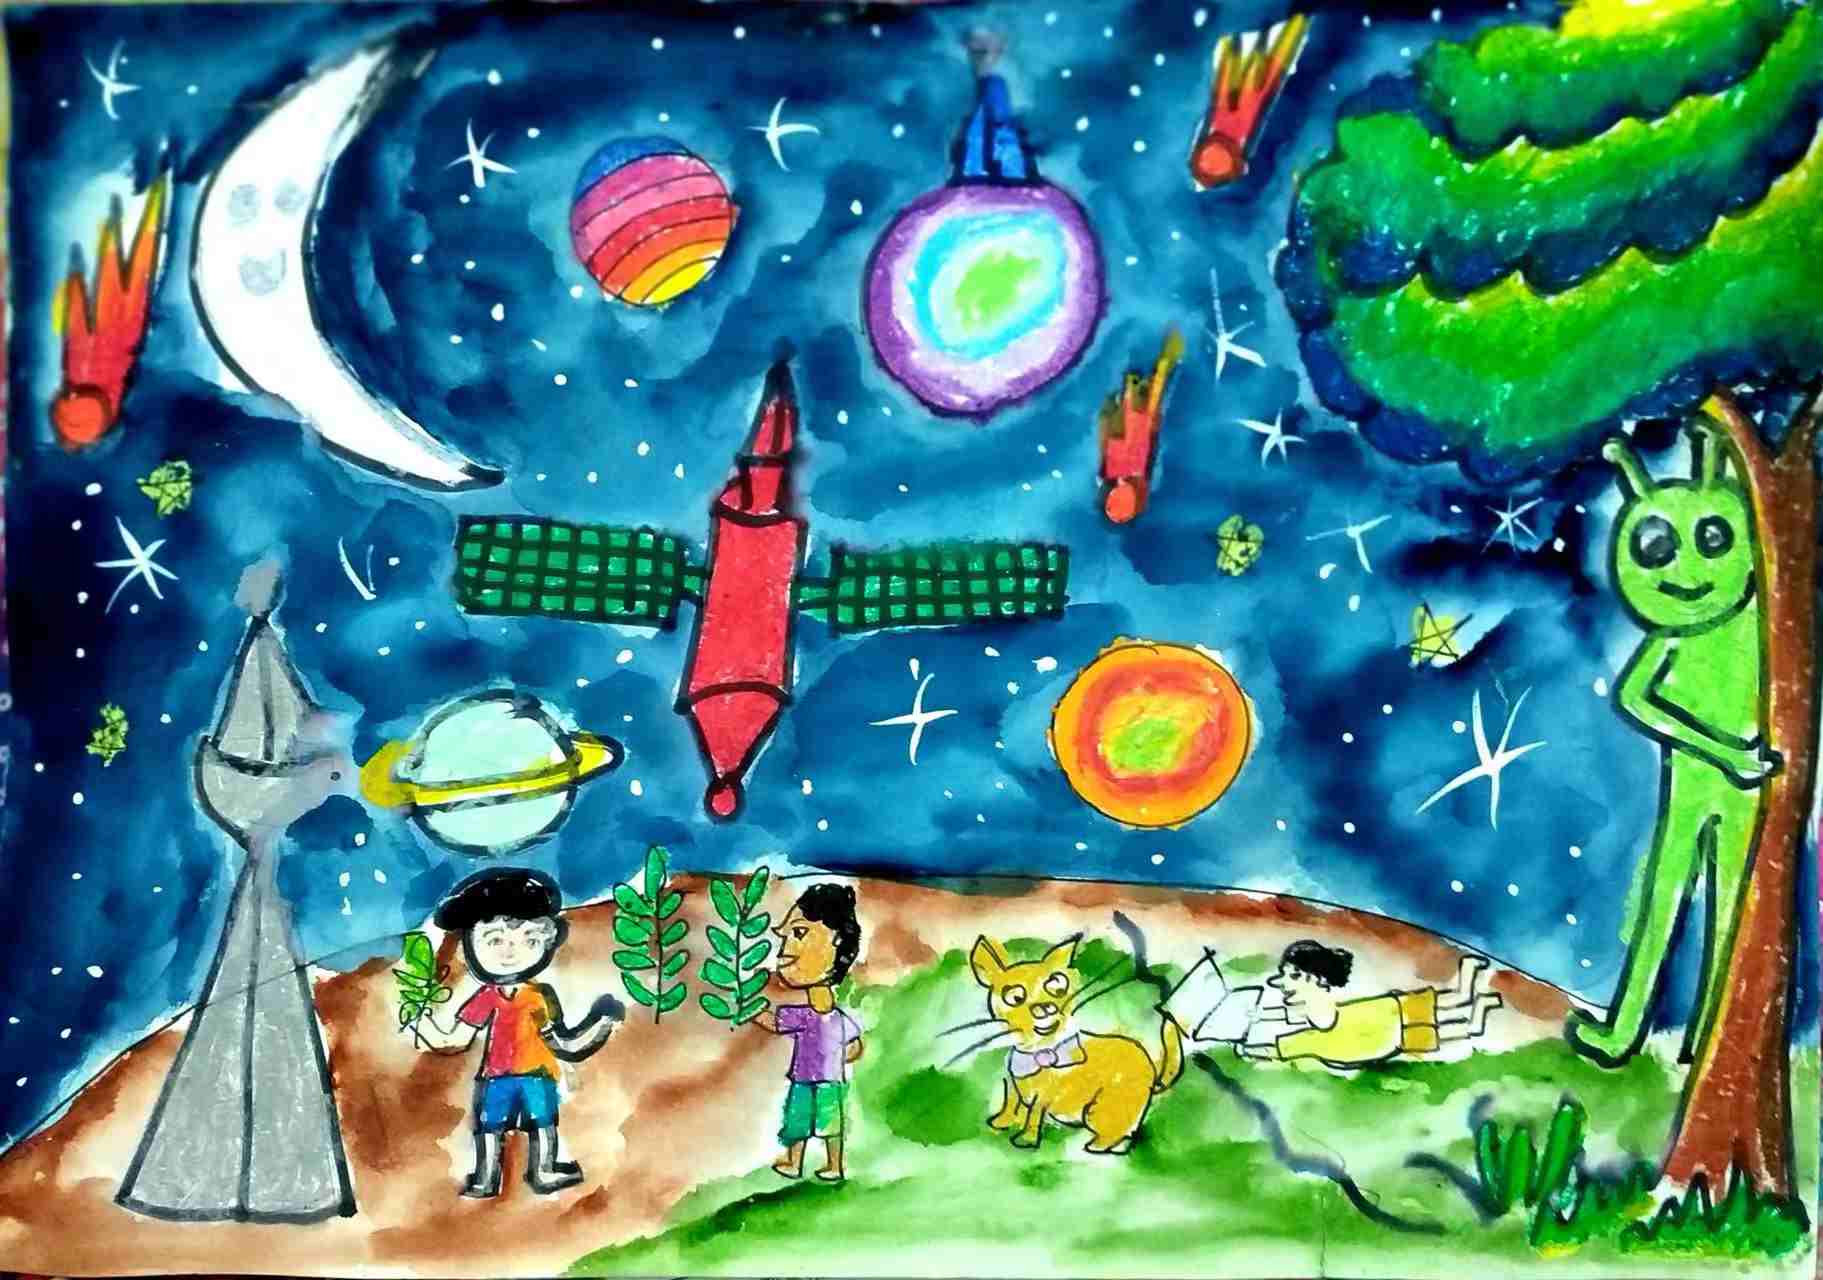 航天日绘画作品《未来生活》,孟加拉国Saadat Ibrahim